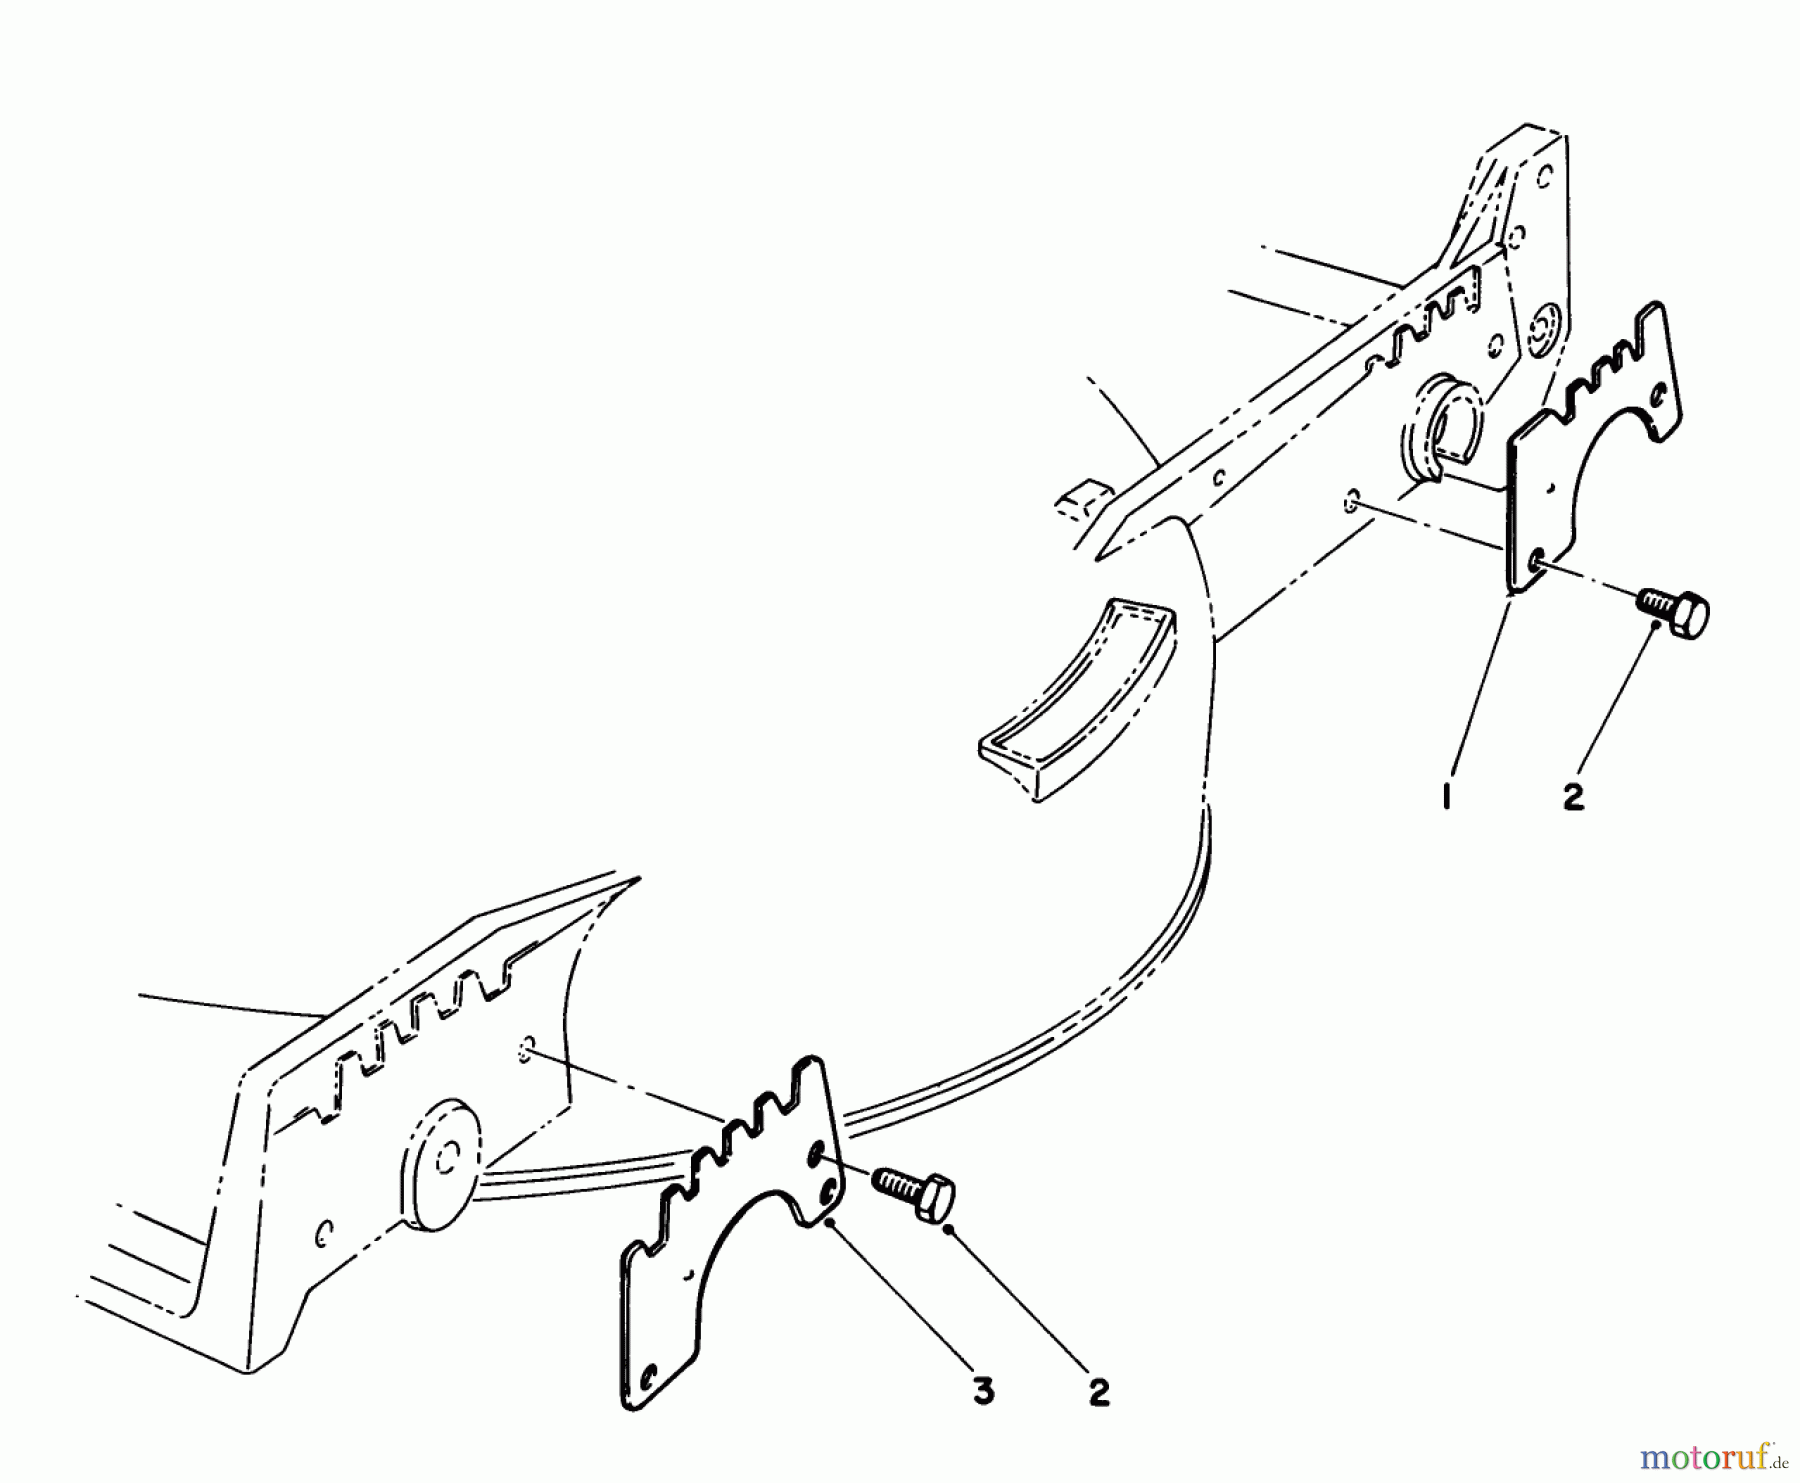  Toro Neu Mowers, Walk-Behind Seite 1 20632 - Toro Lawnmower, 1989 (9000001-9999999) WEAR PLATE KIT MODEL NO. 49-4080 (OPTIONAL)